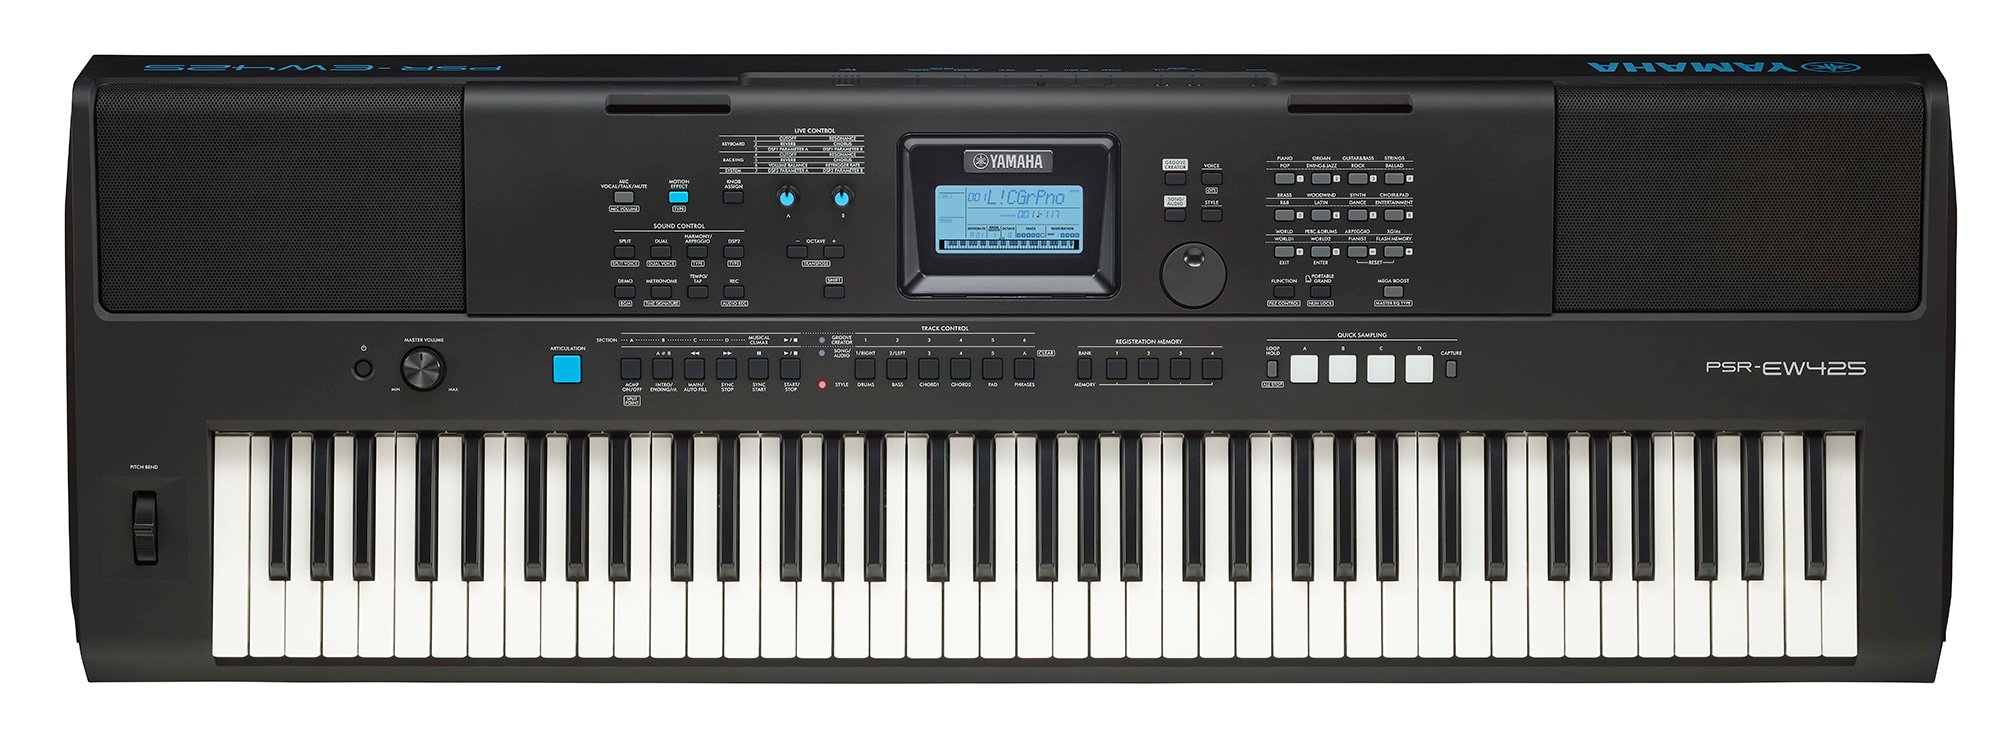 Đàn Organ PSR-EW425 Yamaha